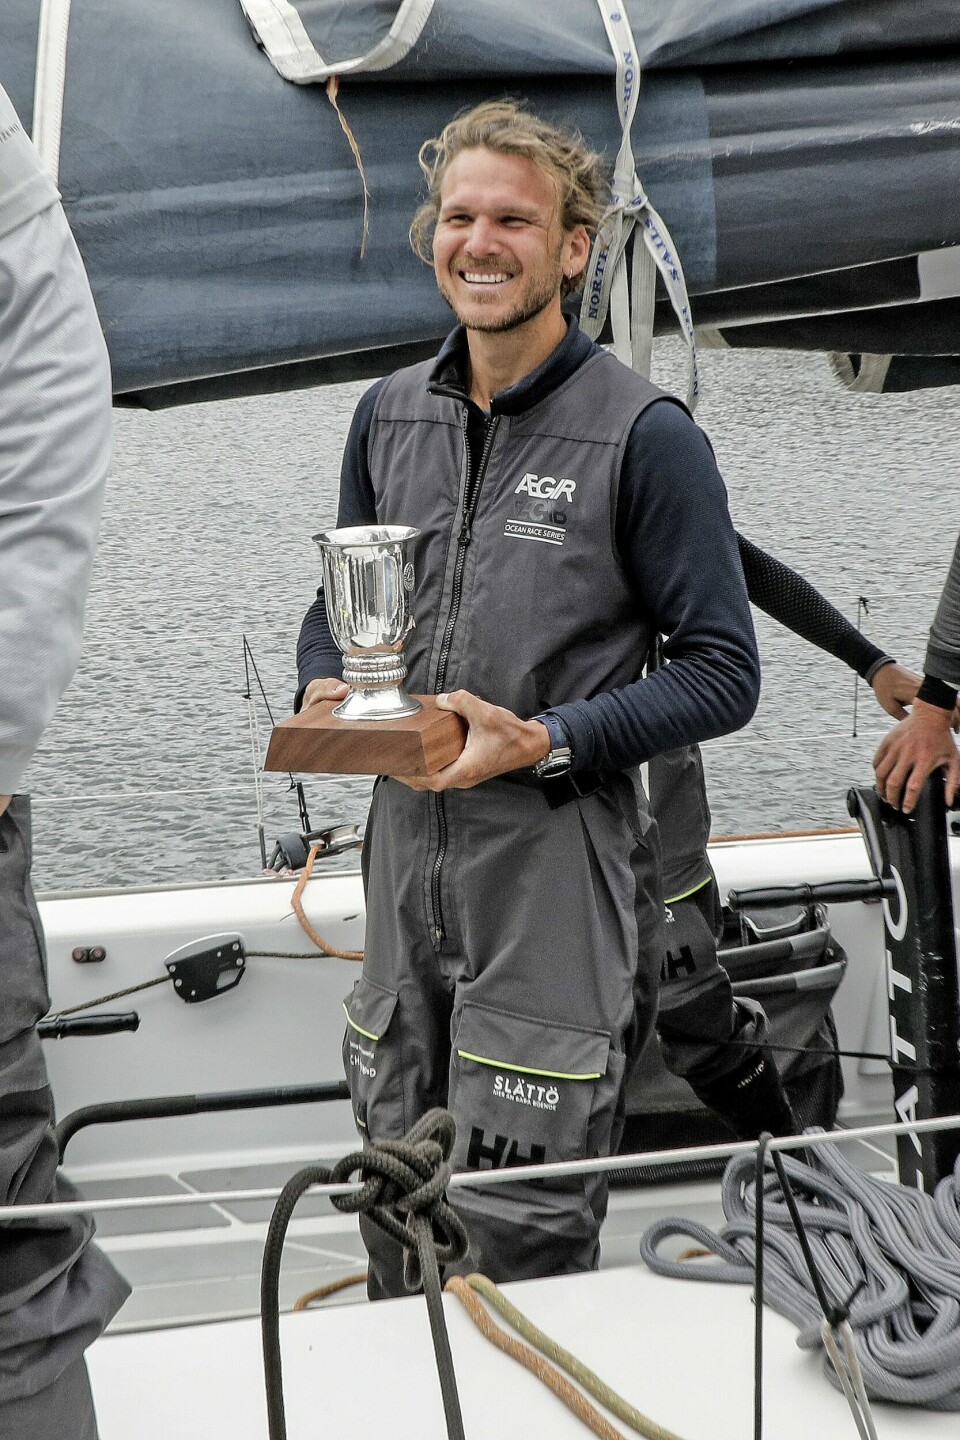 Emil kunne også glæde sig over pokalen, som han skal dele med de 10 andre sejlere i rekordforsøget (Foto: Niels Henrik Dam)